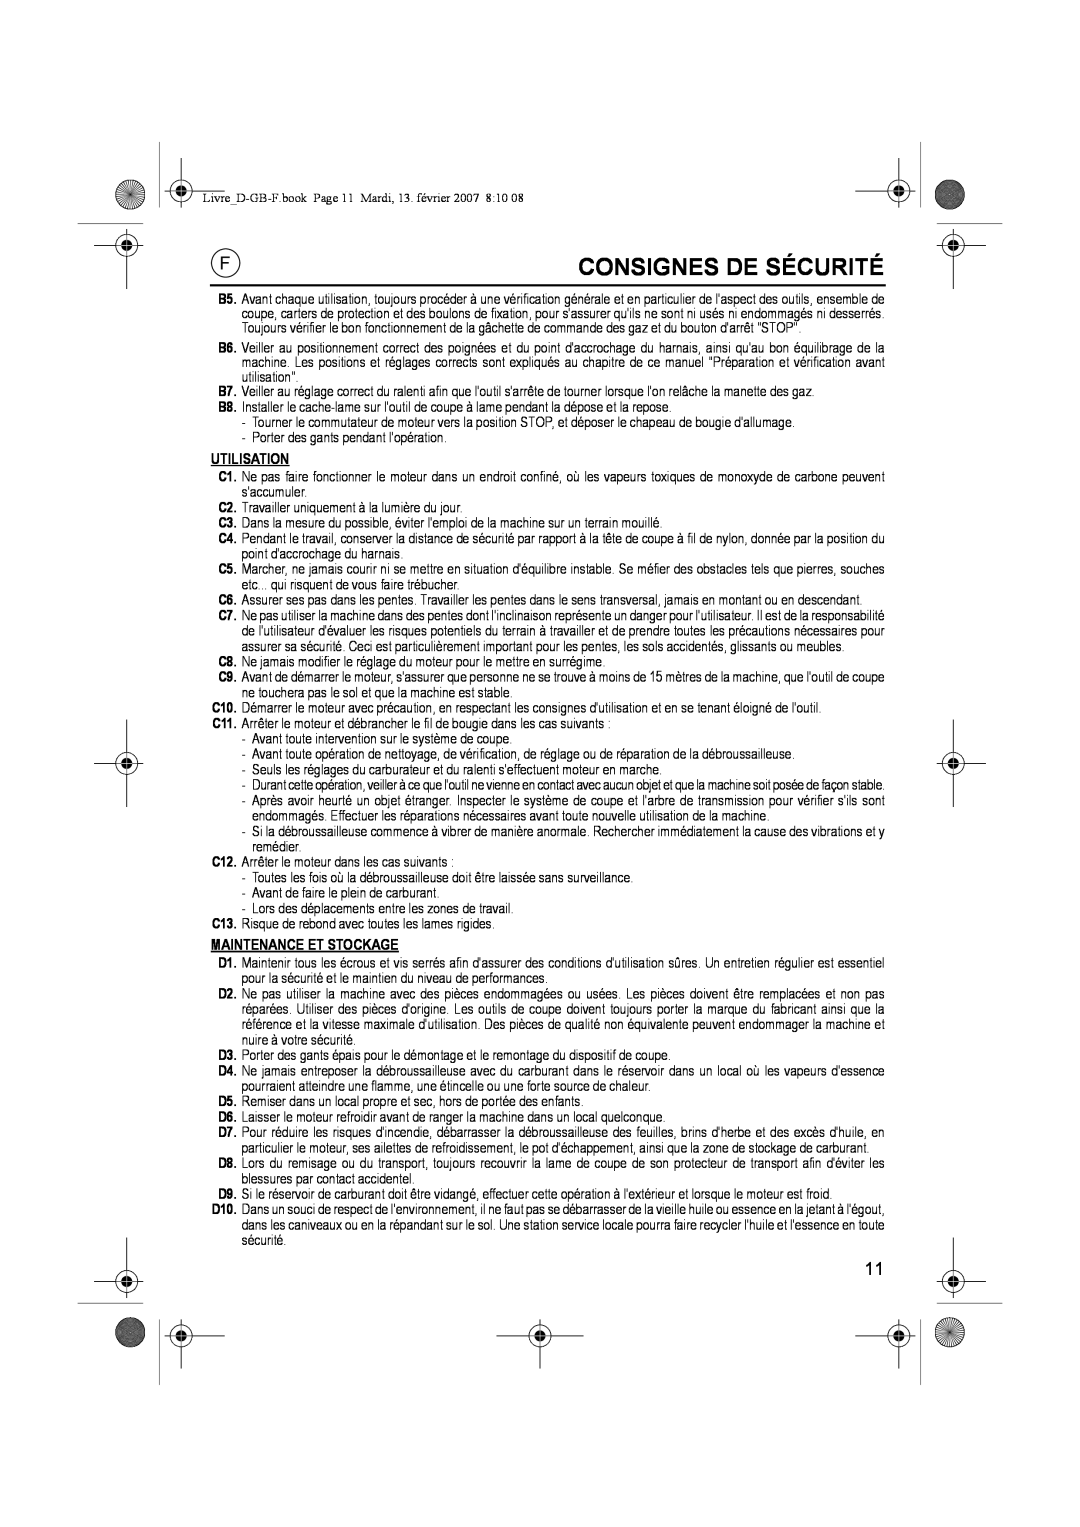 Honda Power Equipment UMK435E owner manual Consignes De Sécurité, Utilisation, Maintenance Et Stockage 